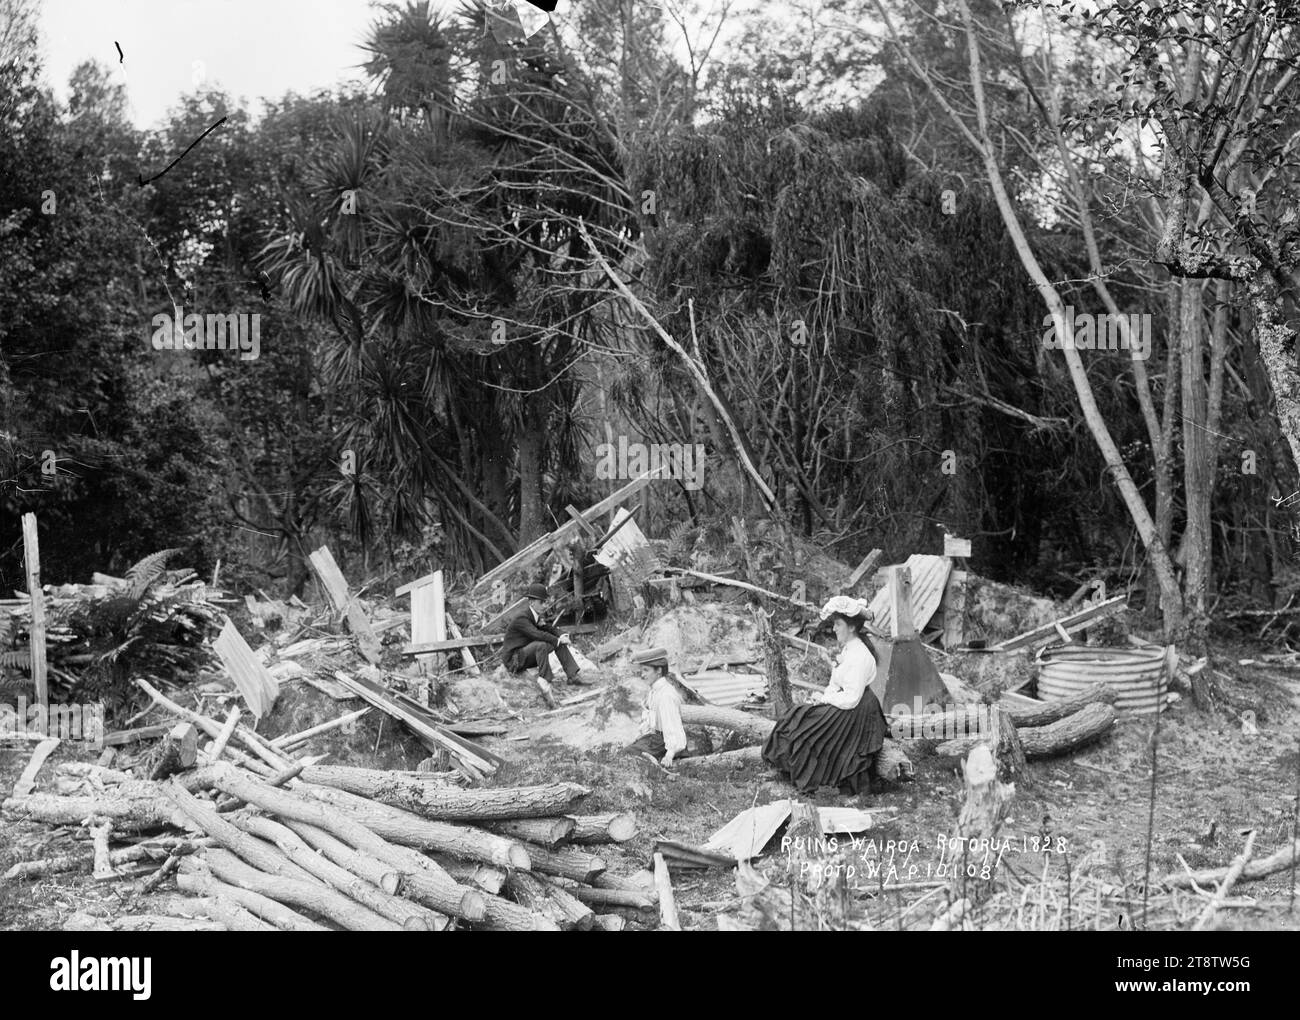 Rovine a te Wairoa, vicino a Rotorua, veduta di un uomo e due donne sedute tra legname, ferro ondulato e tronchi nel sito di edifici demoliti, sullo sfondo di un cespuglio nativo. Si possono vedere i resti di un serbatoio d'acqua. Il 10 gennaio 1908 Foto Stock